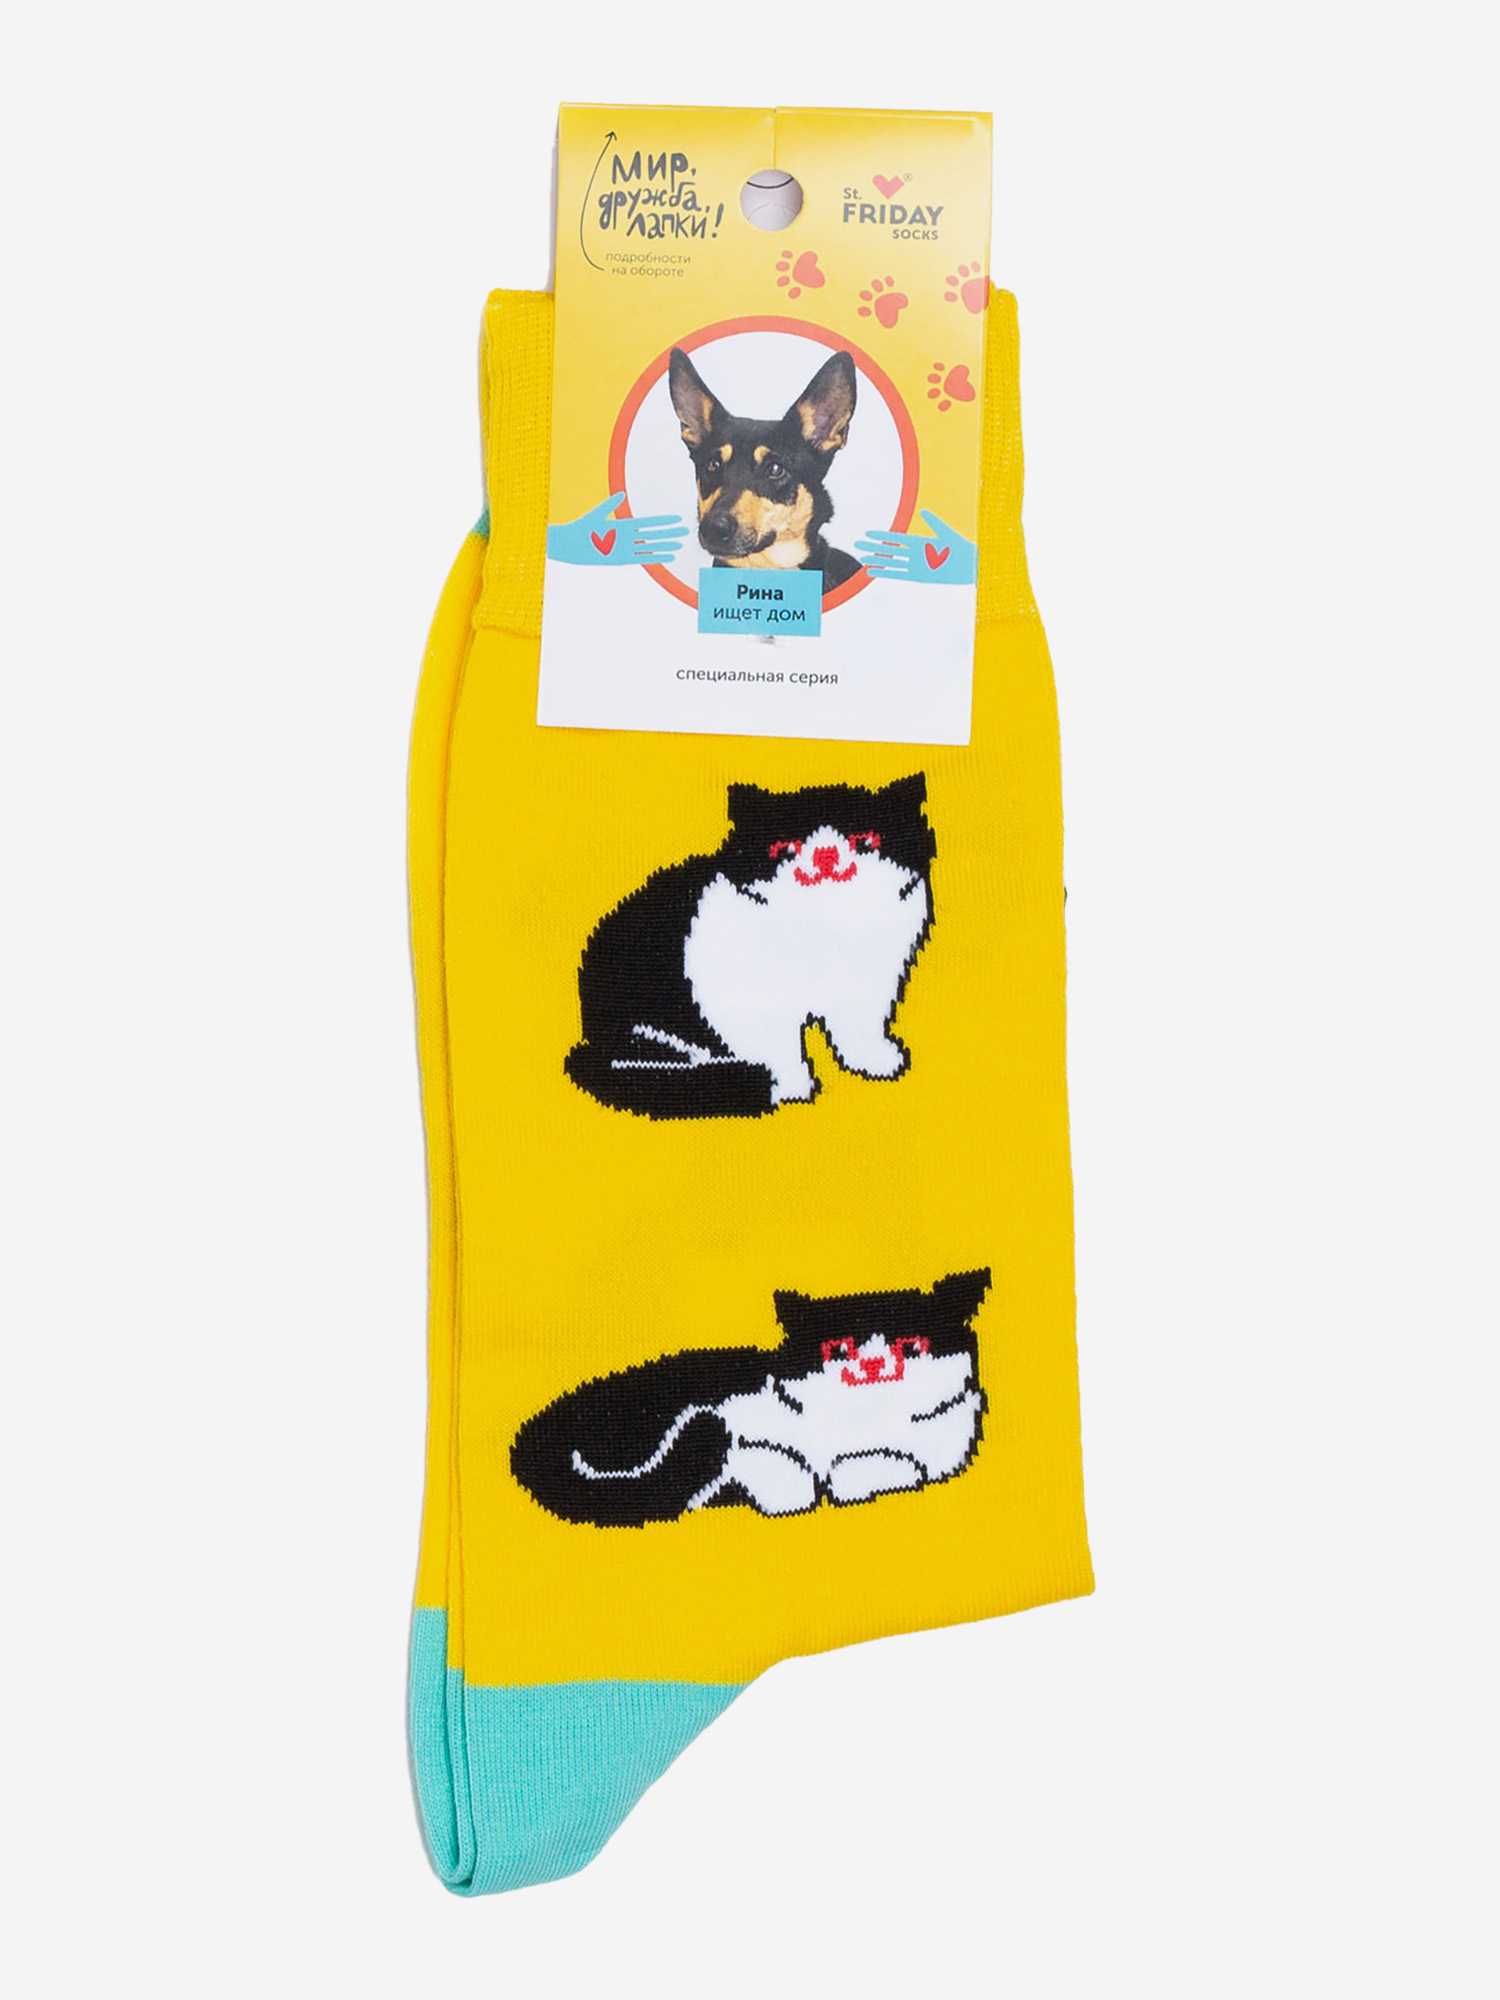 Носки с рисунками St.Friday Socks - Экзотический кот, Желтый